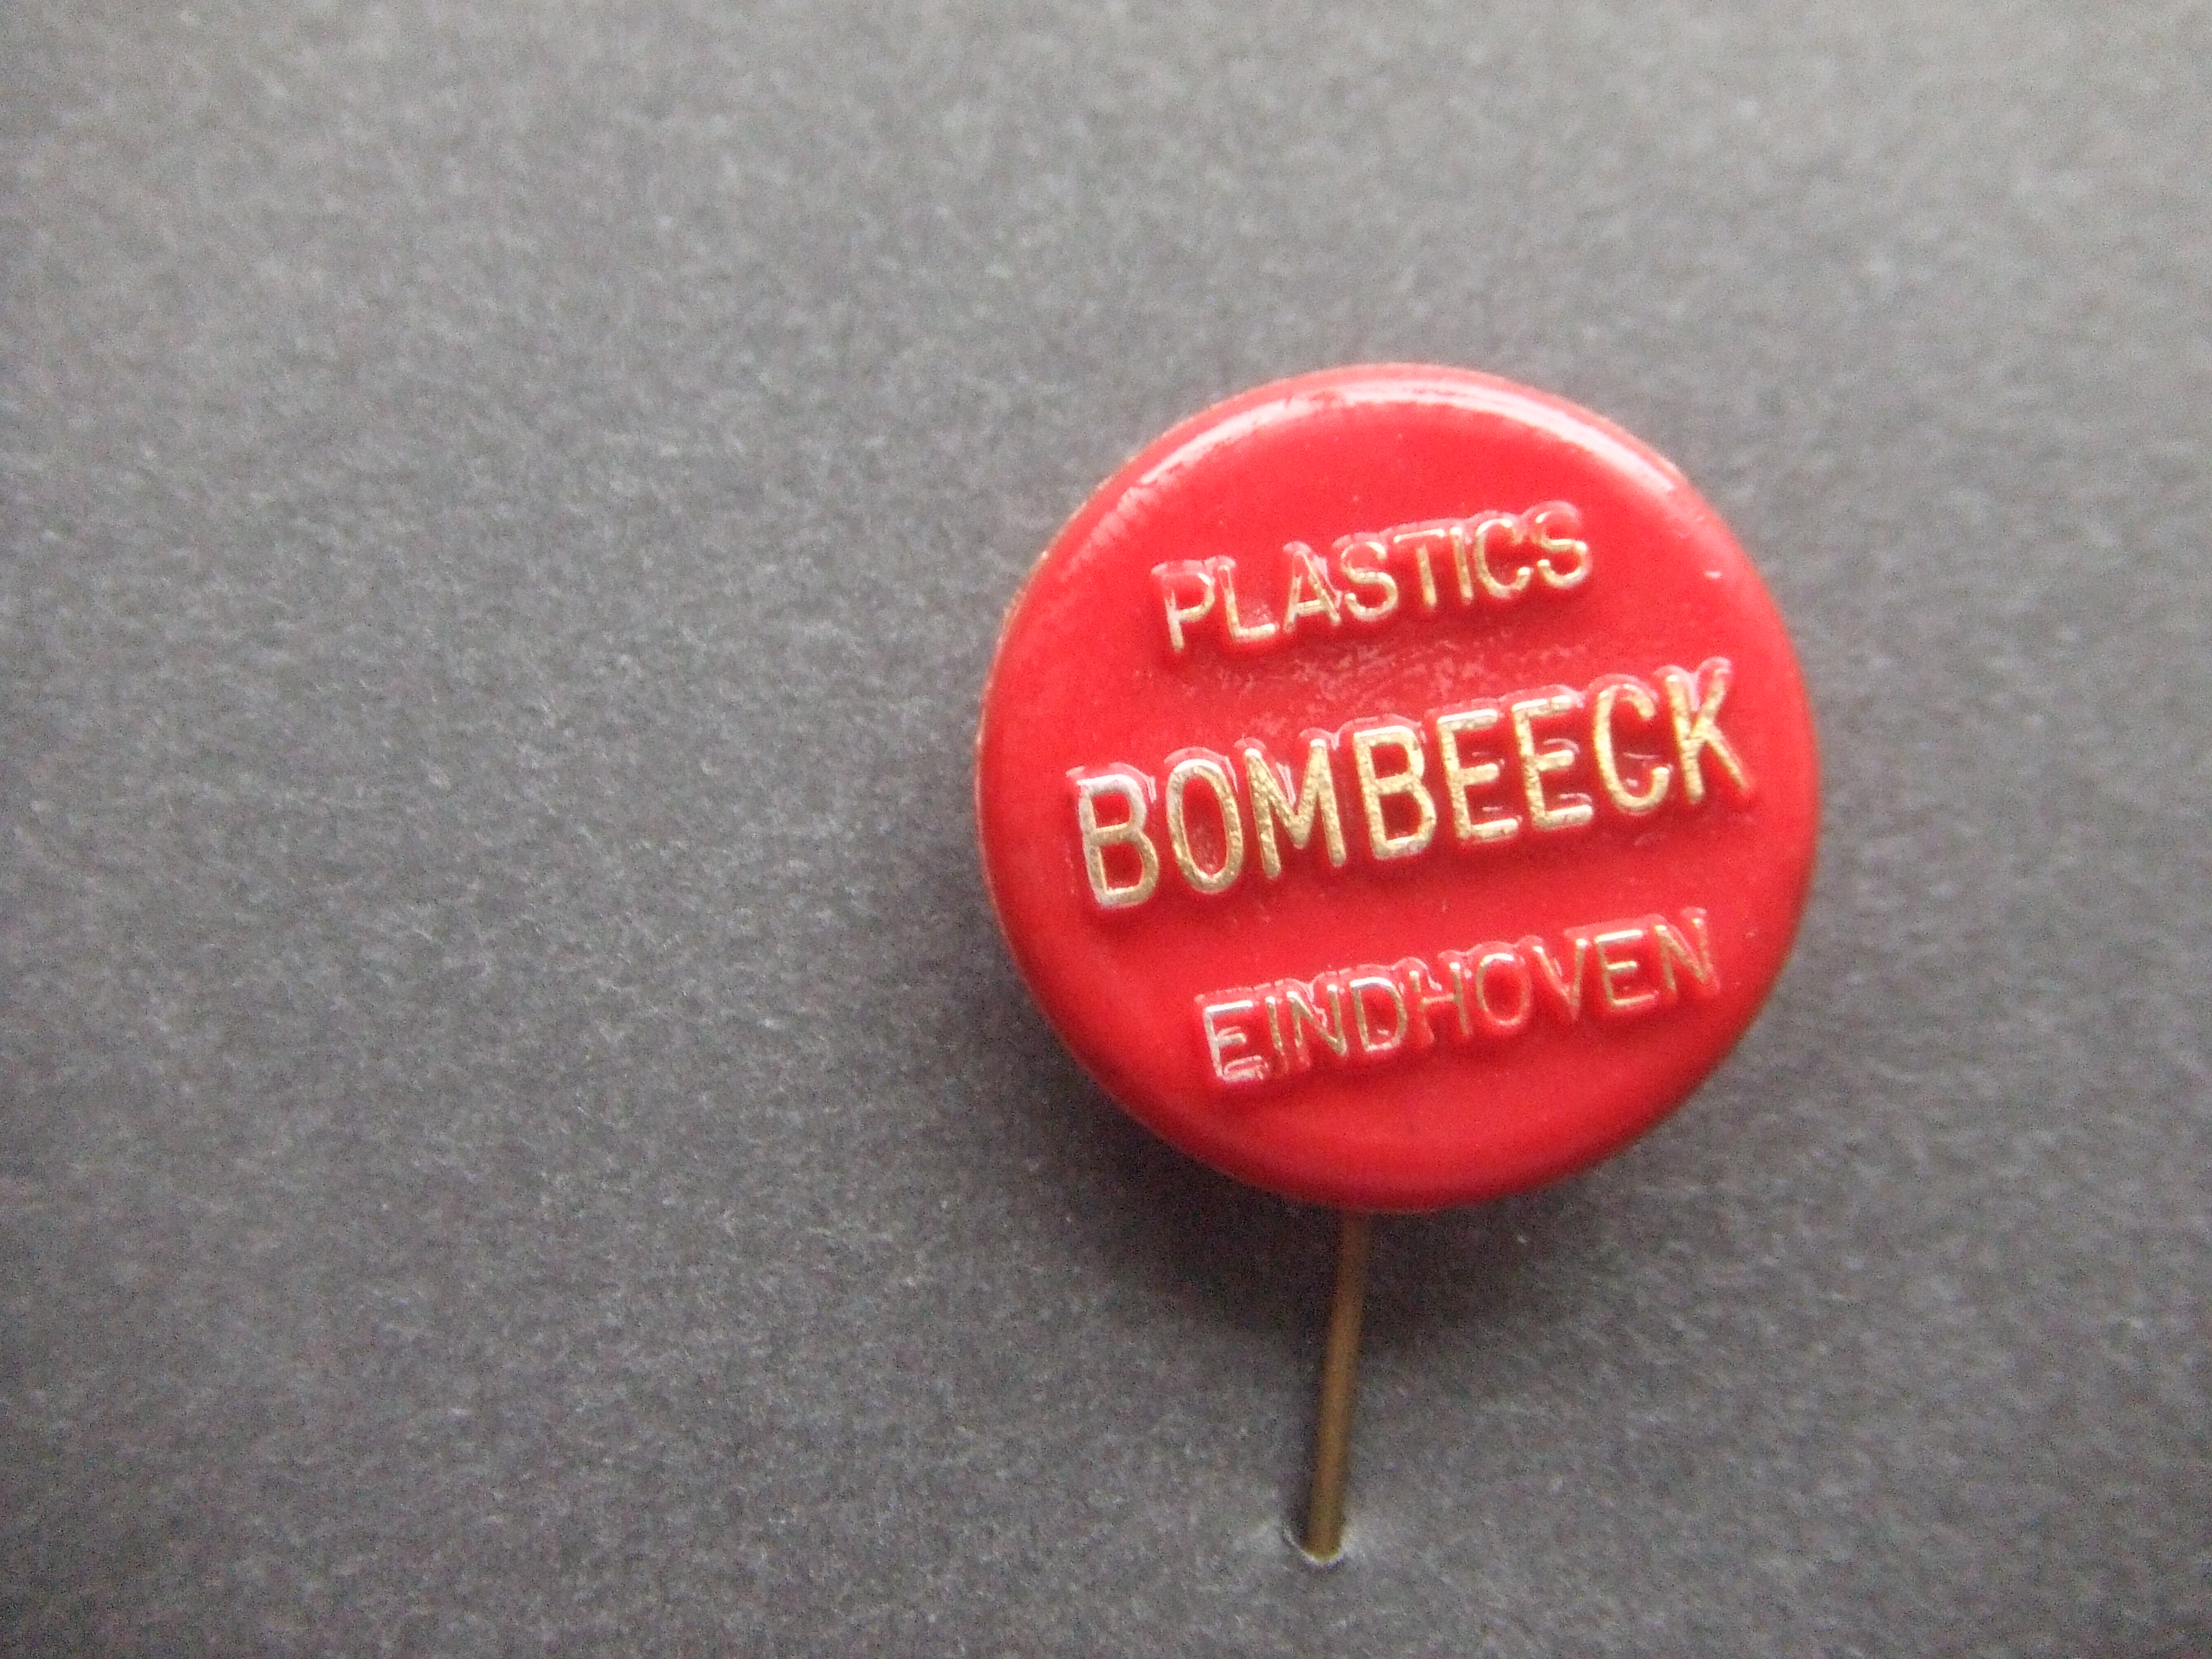 Bombeeck Plastics - Eindhoven rood